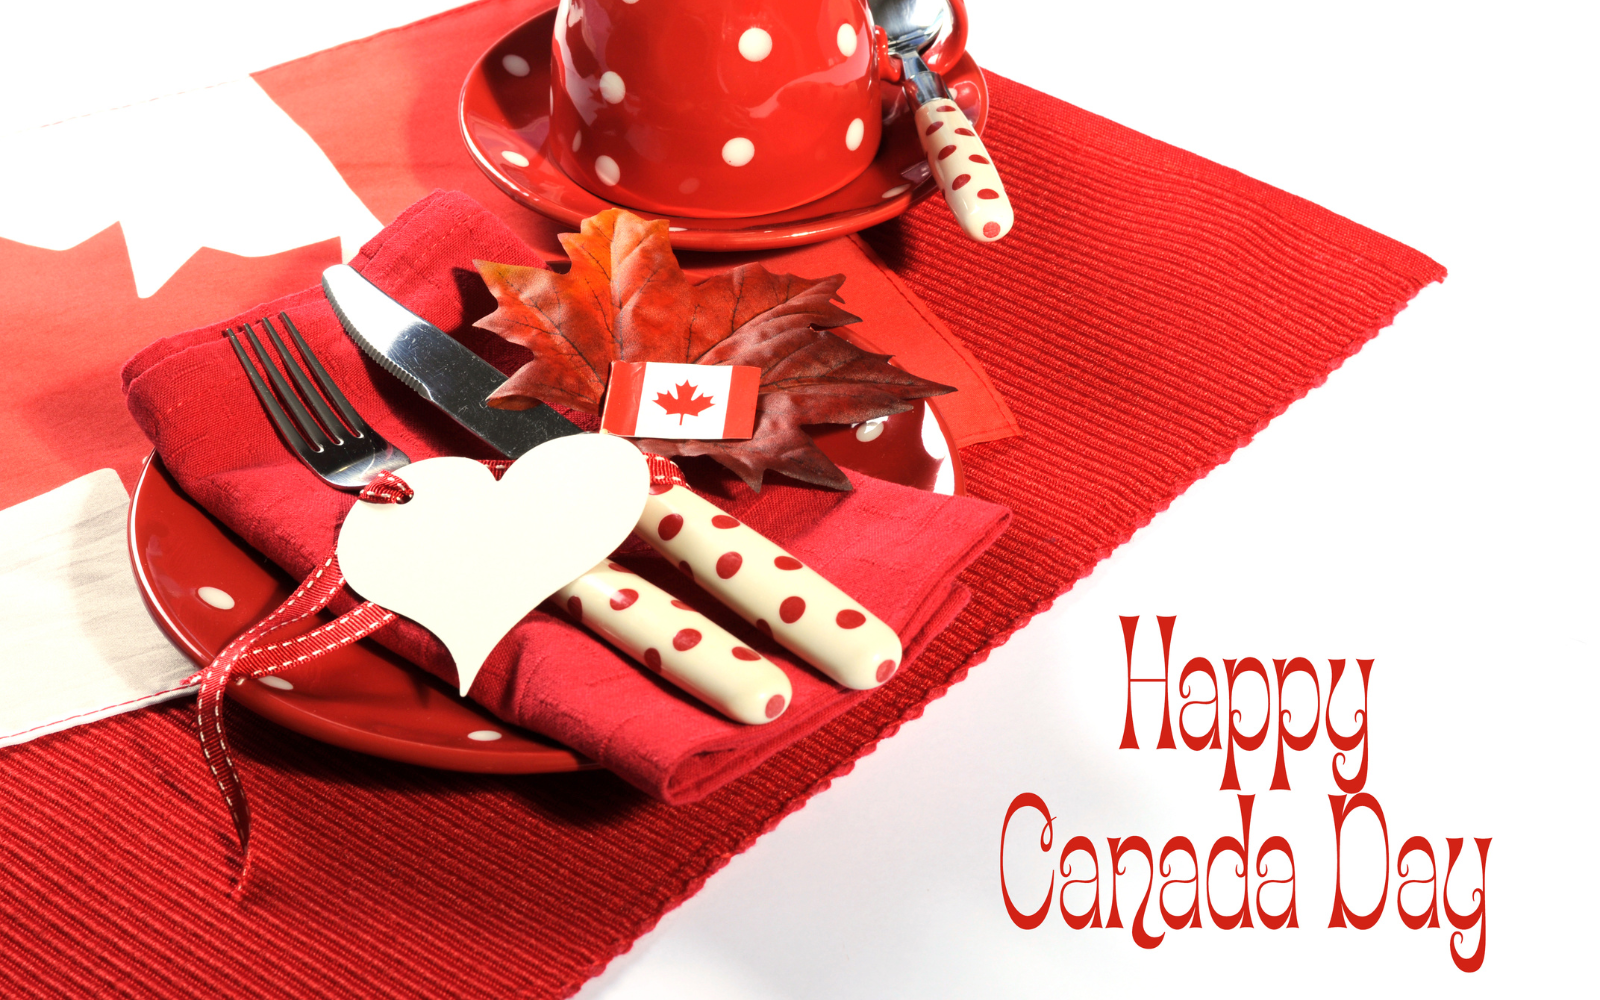 Happy Canada Day Everyone!